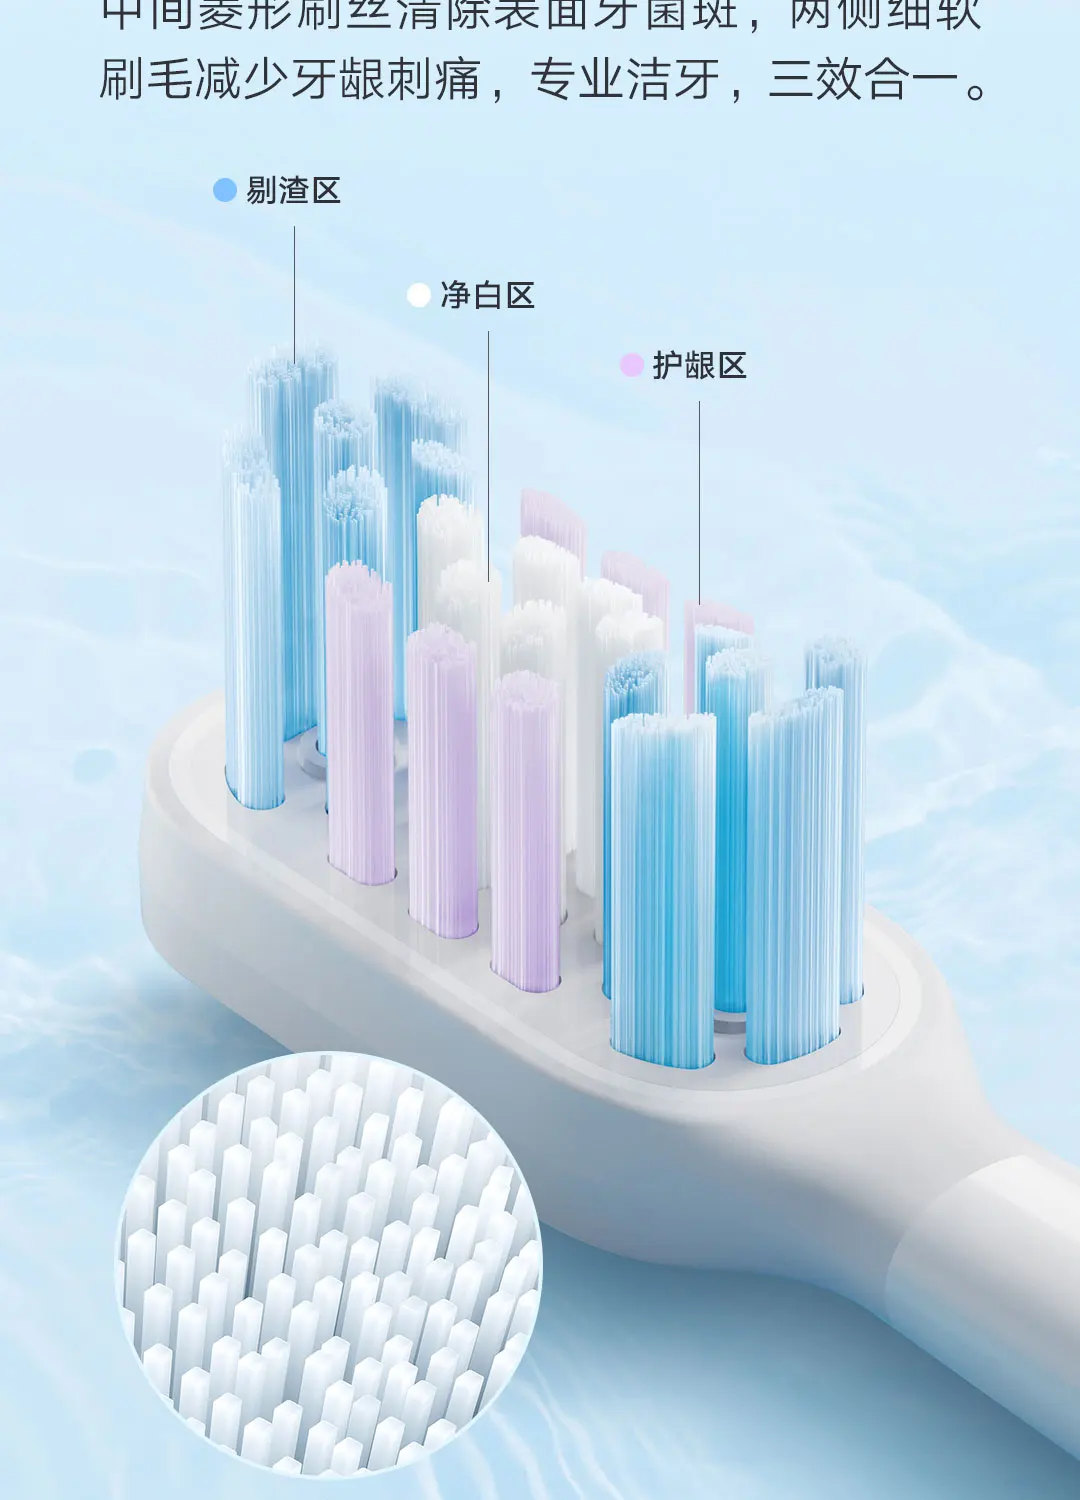 Xiaomi Mijia T501/T501C Электрическая Насадка Для Зубной щетки С Полным Эффектом Ярко-Белая Насадка Для Ухода За Зубами Sonicare Насадки Для Зубных щеток 2 шт. 5